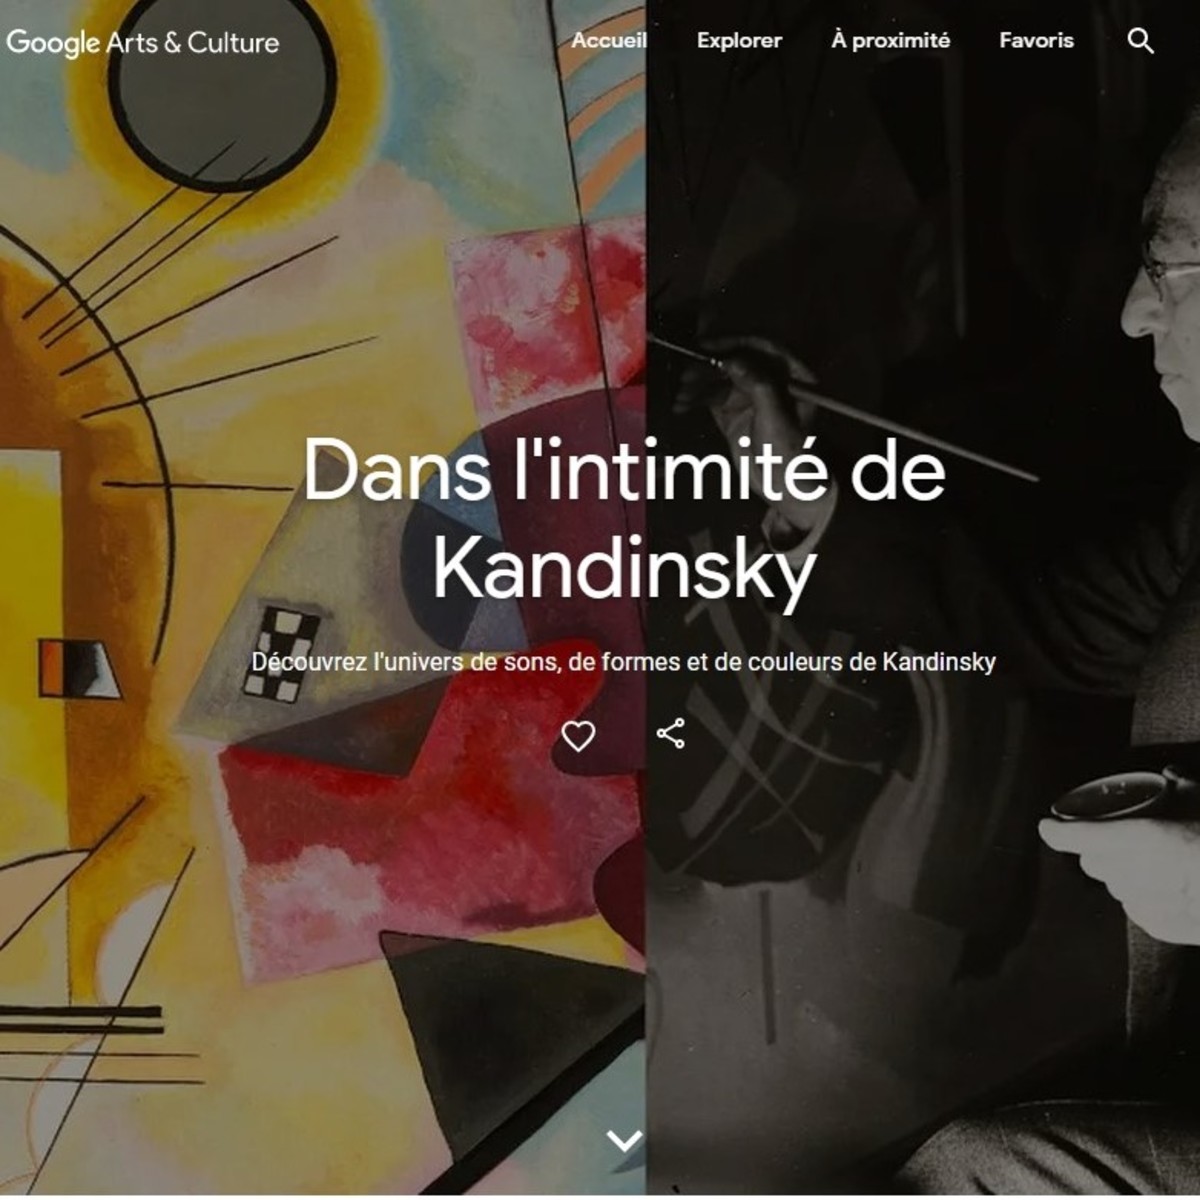 Google et le Centre Pompidou, une collaboration inédite autour des oeuvres de Kandinsky